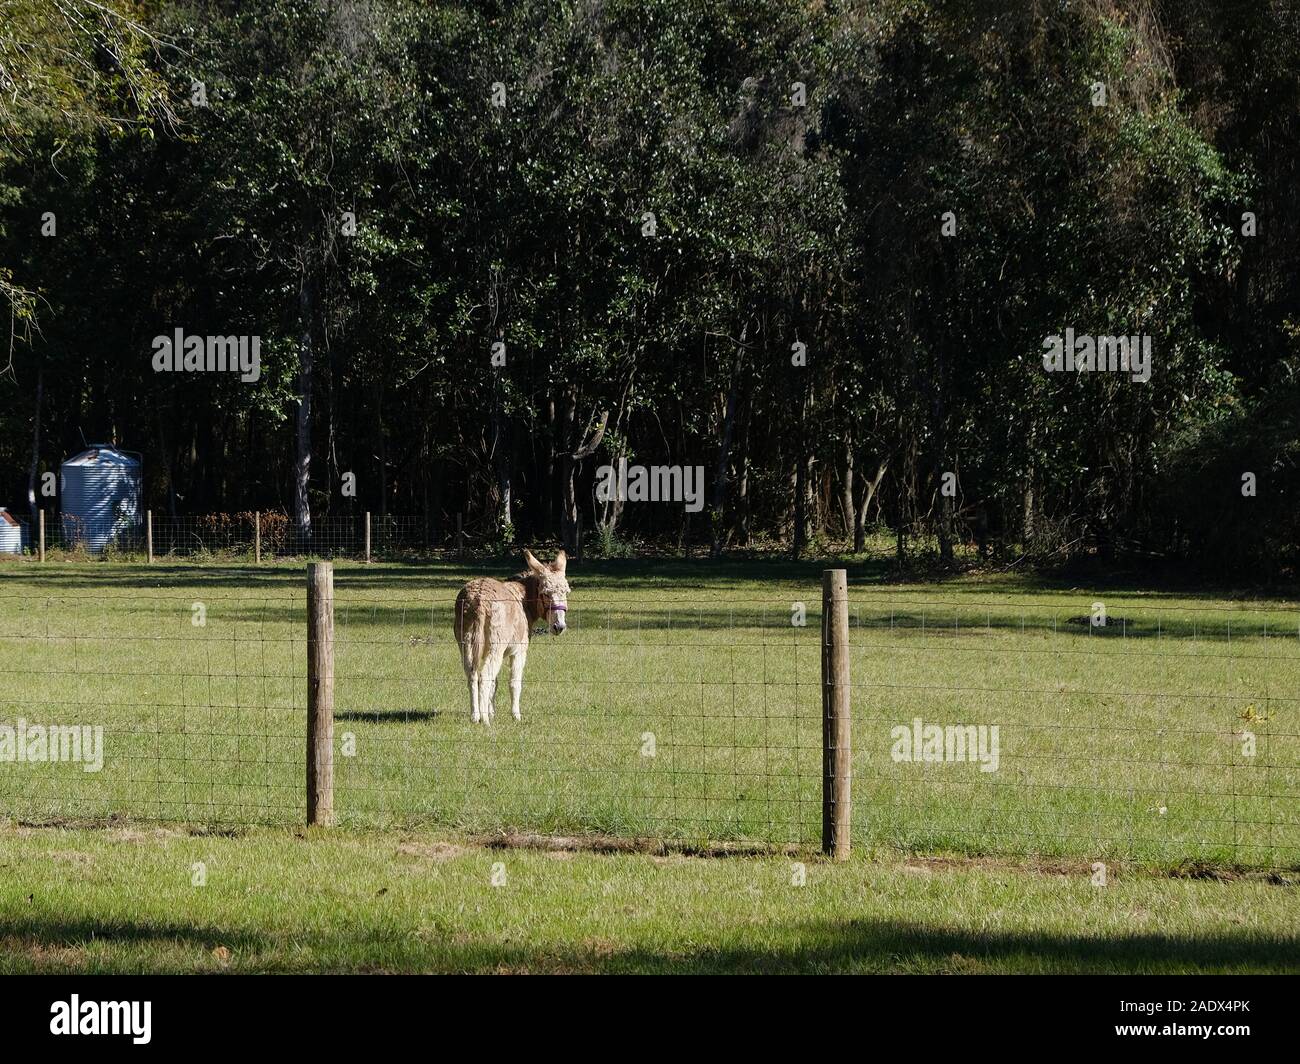 Esel oder Burro in einer Farm Feld oder Weide in ländlichen Alabama, USA. Stockfoto